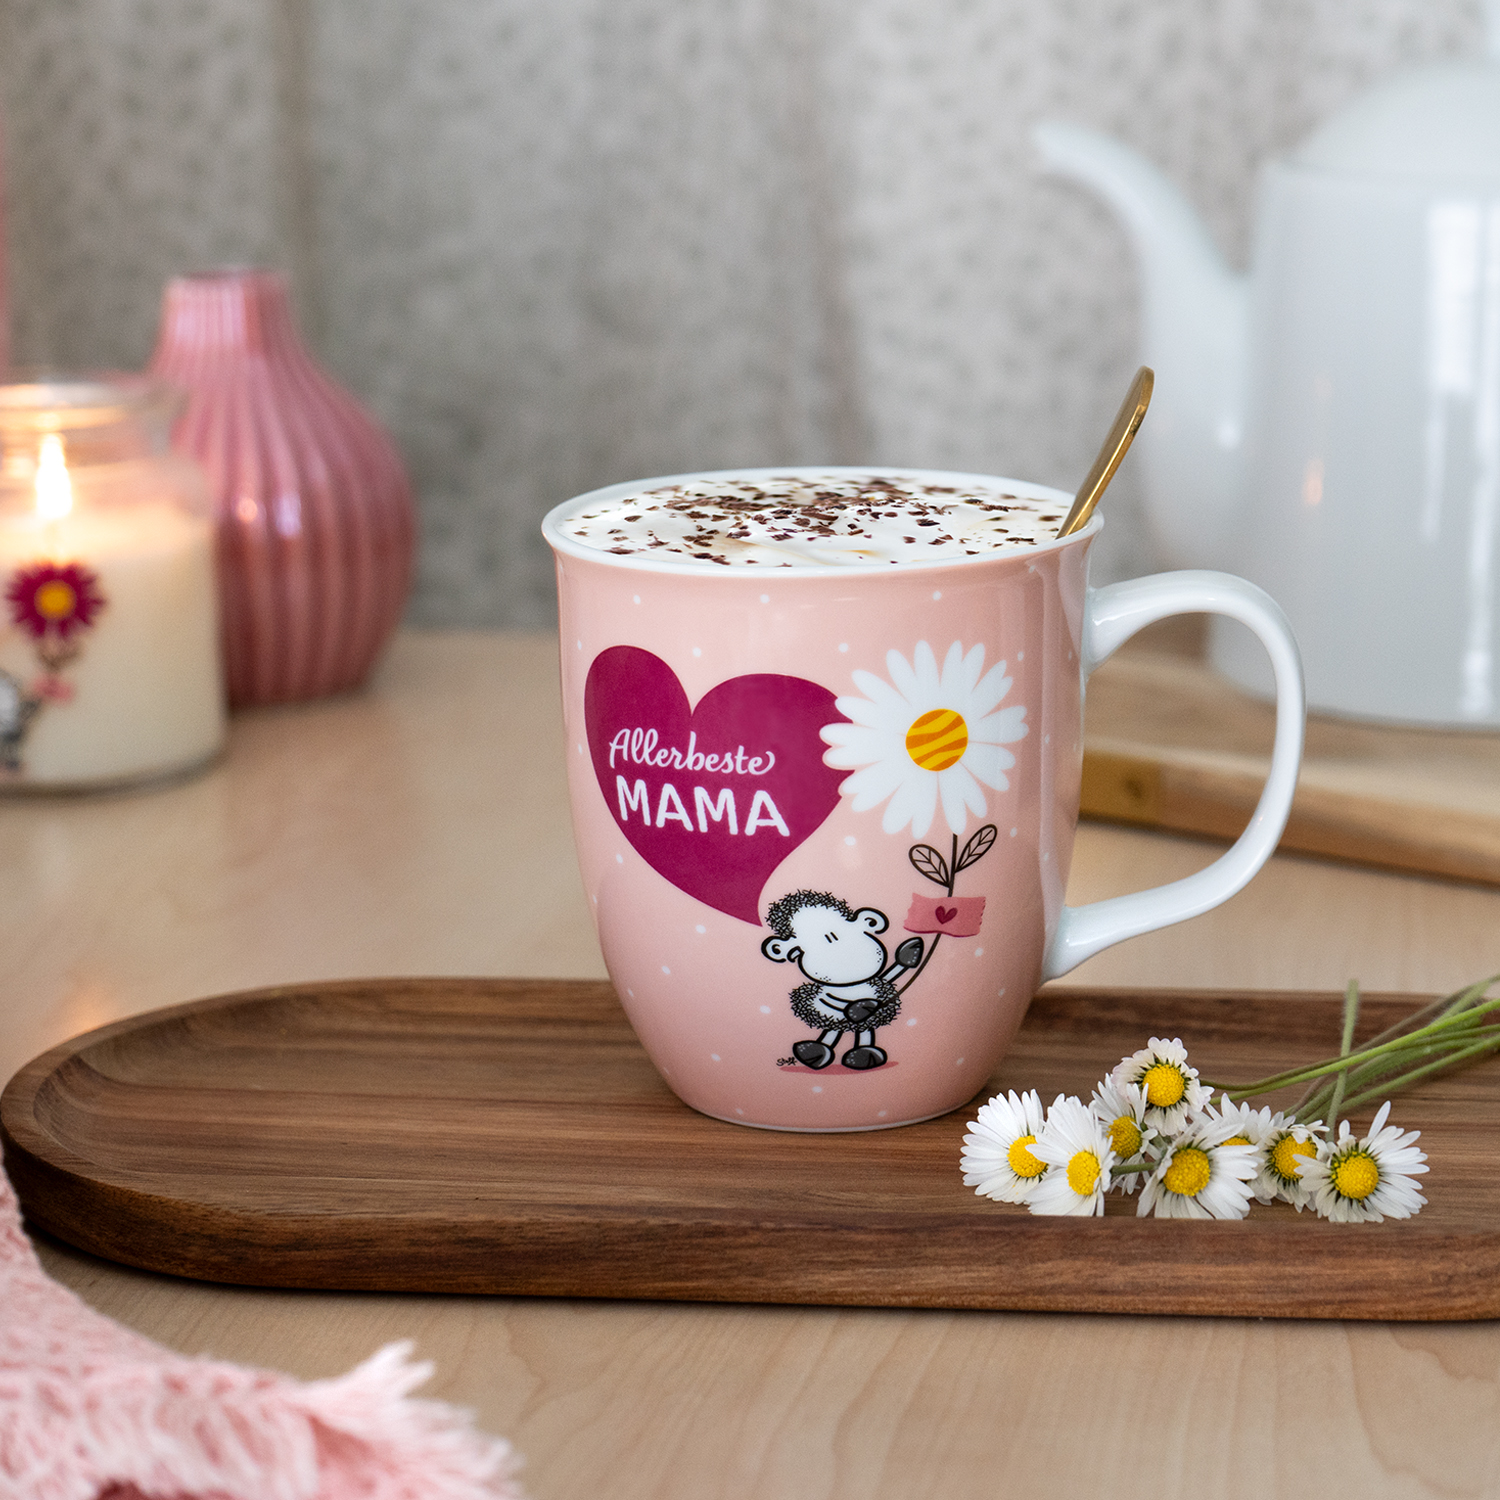 Entdecke jetzt unsere neuen Geschenkideen für die ALLERBESTE MAMA der Welt! ❤️😍 Wie wäre es mit einem selbstgepflückten Blumenstrauß in einer hübschen Vase, einer Tasse Kaffee, einer Kerze für eine kuschelige Stimmung oder ein Kirschkernkissen für entspannte Momente? 😁Deine Mama wird sich bestimmt über eine kleine Aufmerksamkeit am Ehrentag der Mütter freuen. 🥰
.
.
.
#sheepworld #Muttertag #muttertagsgeschenke #giftideas #geschenke #geschenkidee #mama #mumgoals #mum #mami #mutter #muttersein #familie #family #goodtimes #aufmerksamkeit #mitbringsel #überraschung #mamaleben #dubistwertvoll #dubisttoll #meinemamaistdiebeste #engelohneflügelnenntmanmama #geschenkset #geschenk